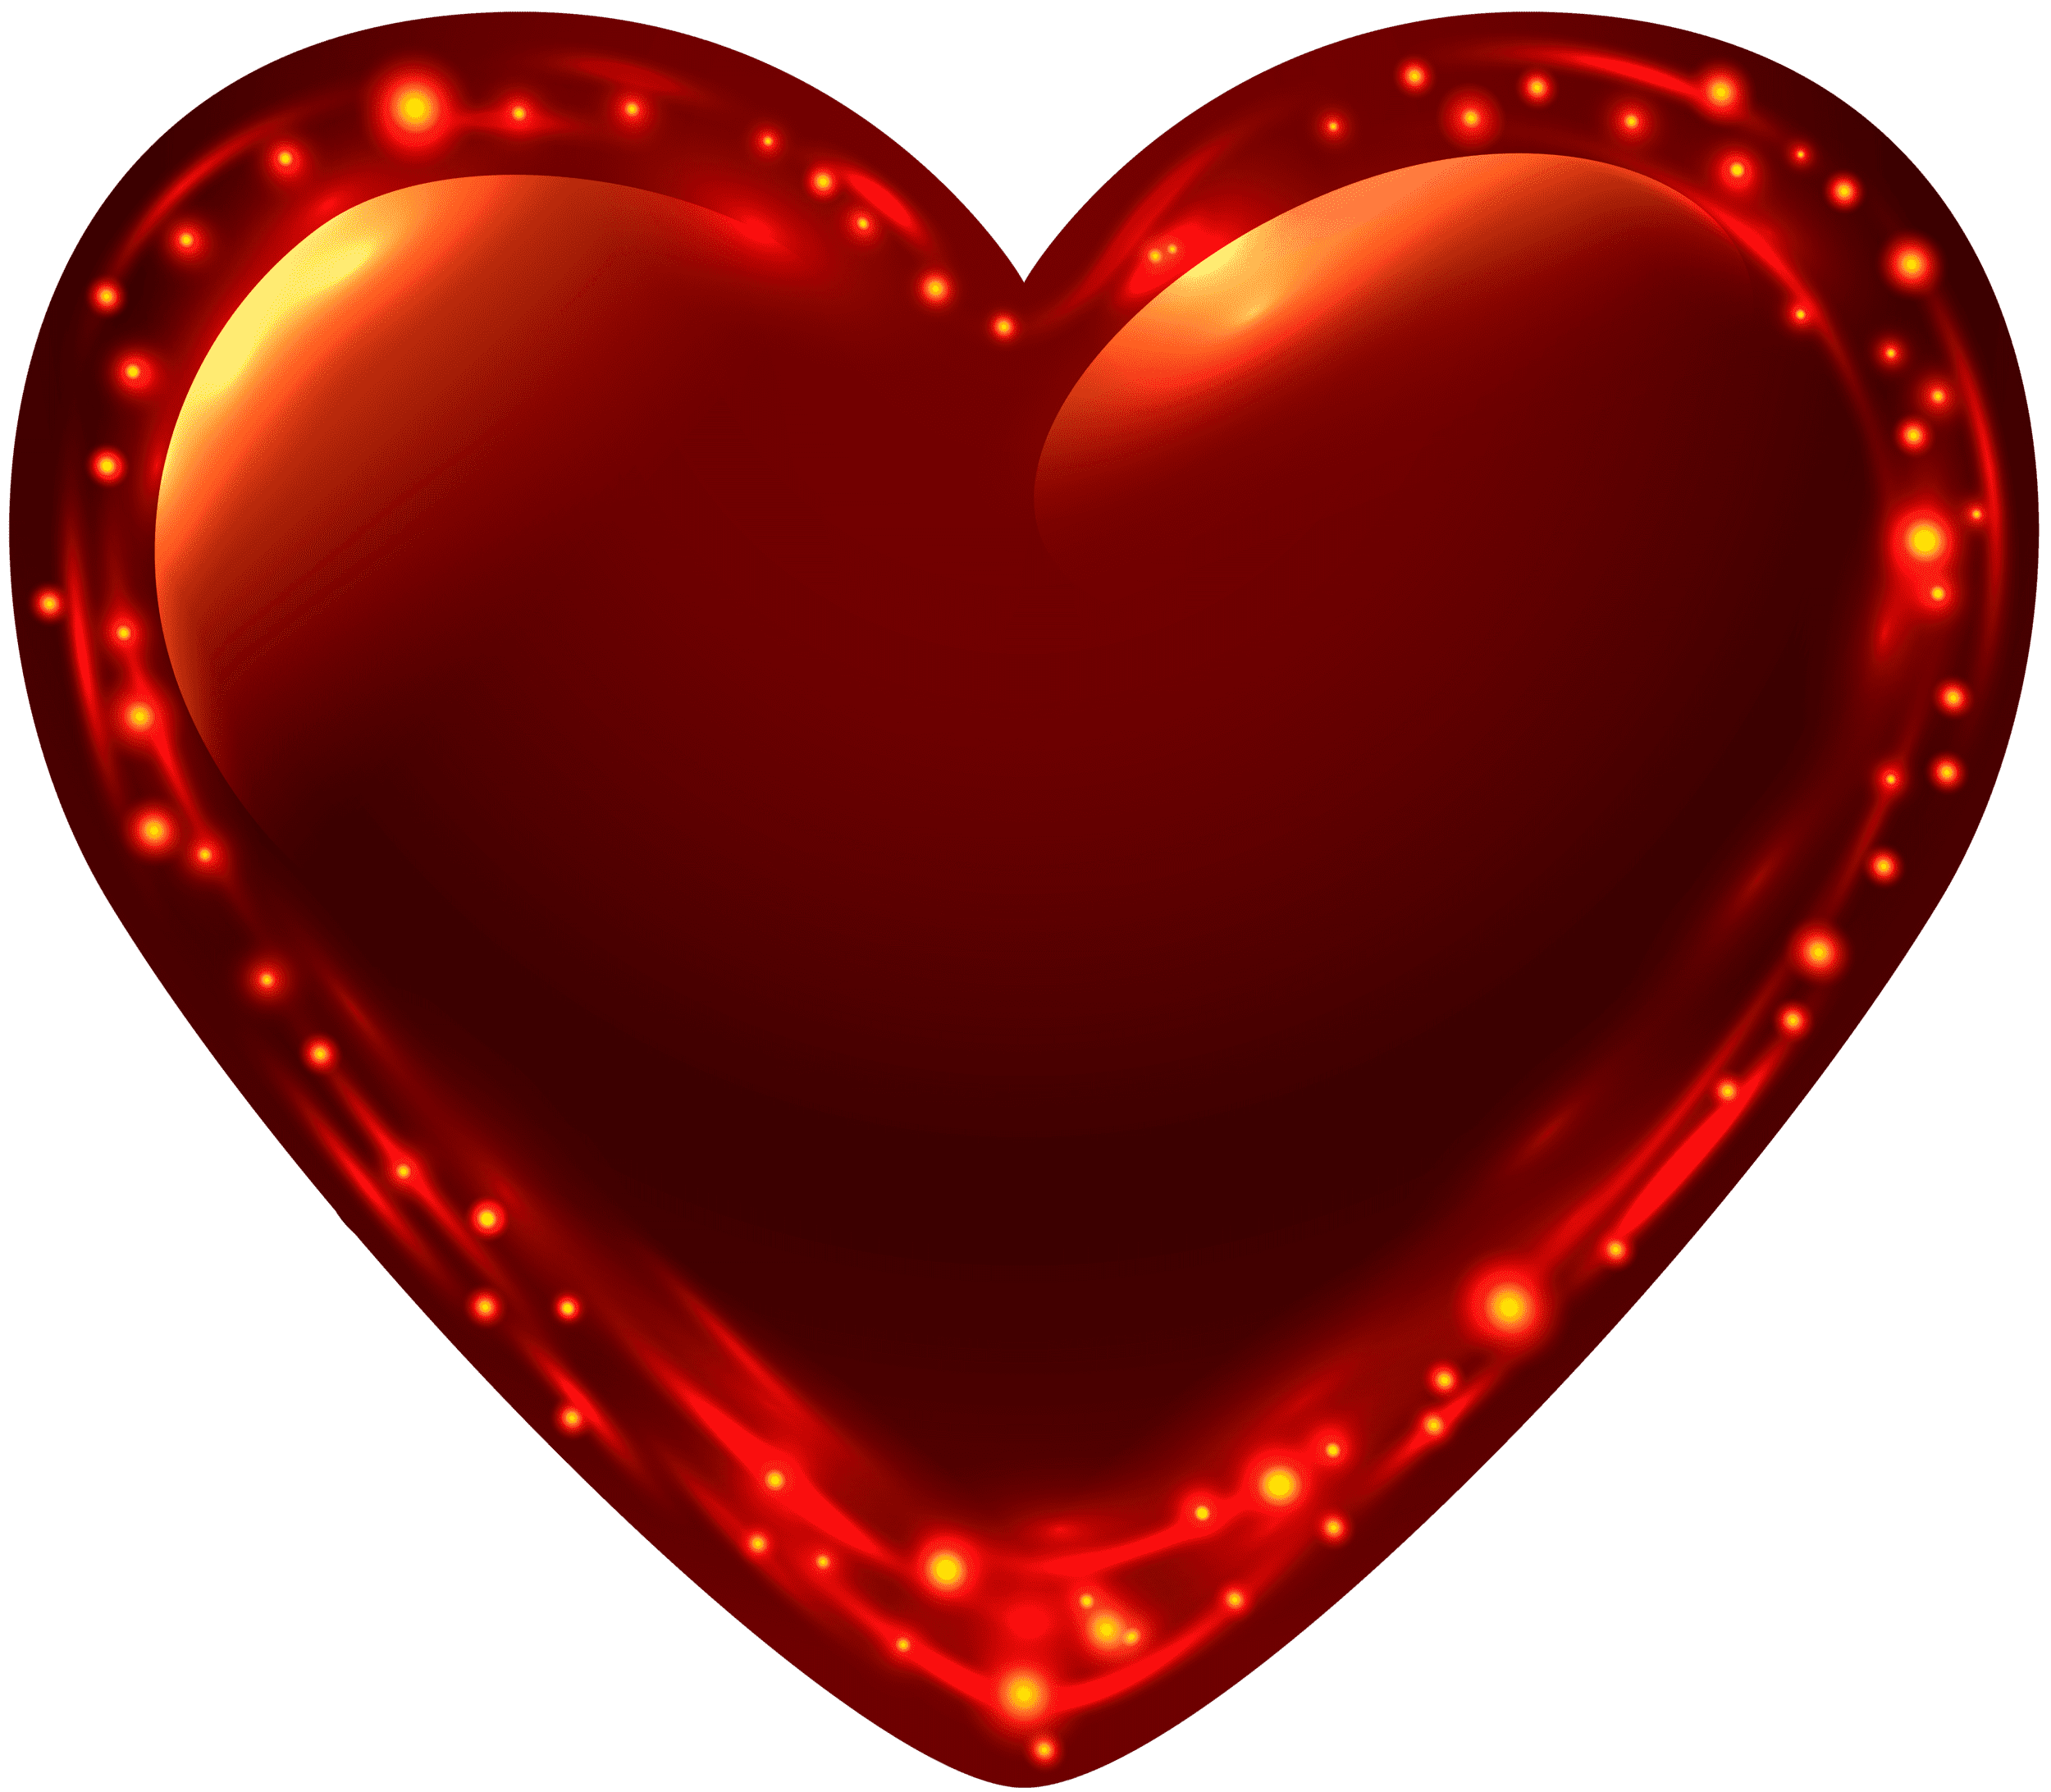 Fiery Glowing Heart PNG Clip Art Image